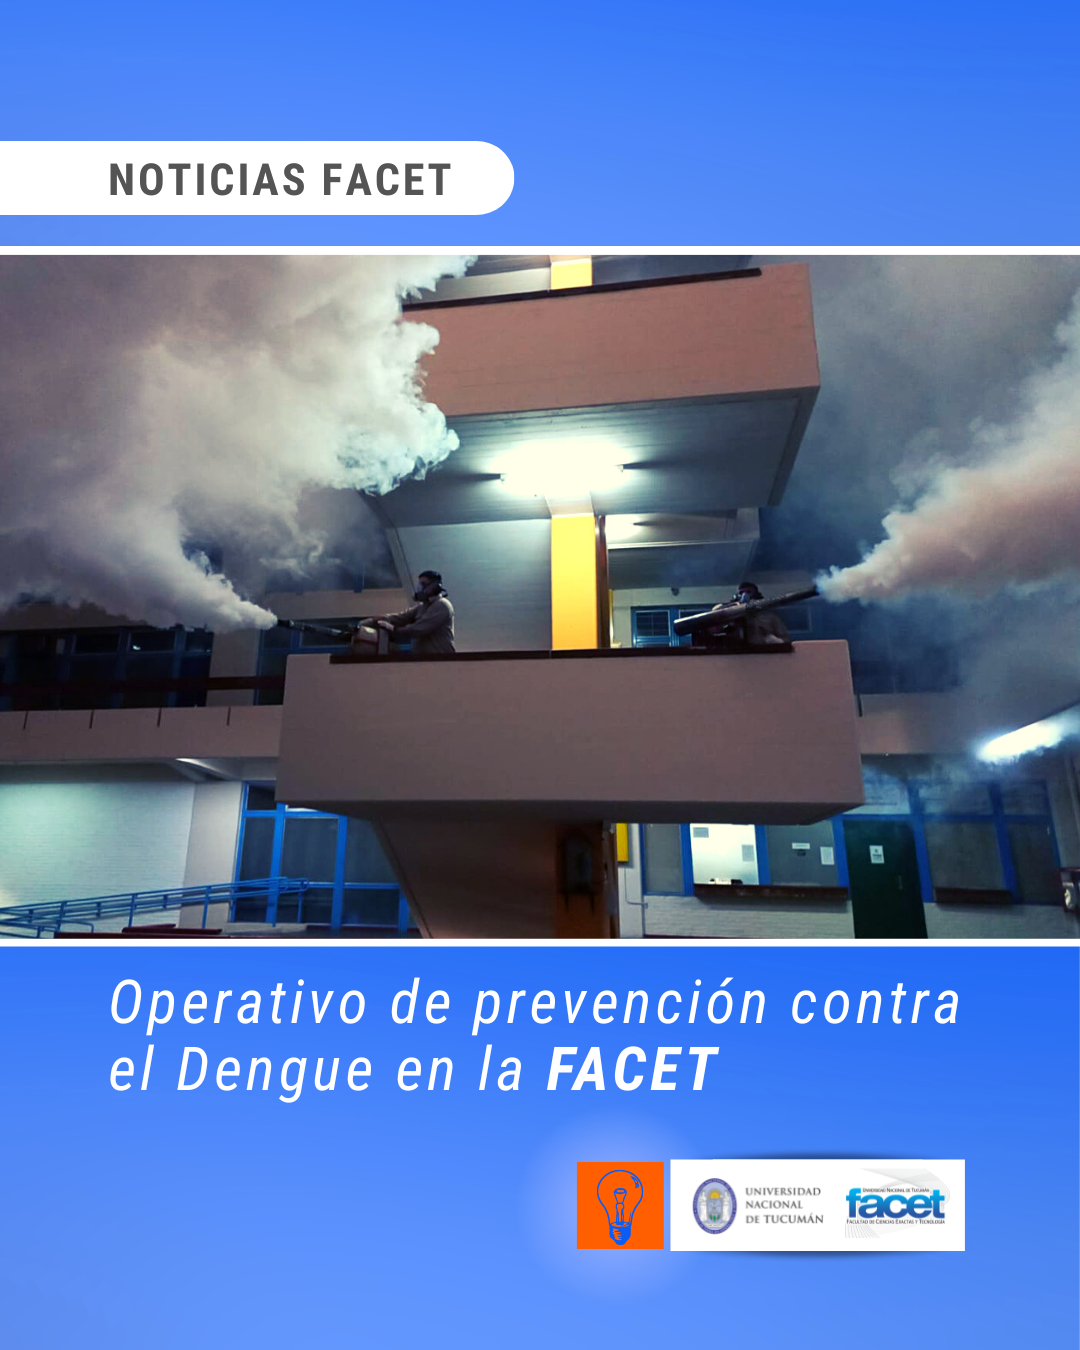 Noticias | Operativo de prevención contra el Dengue en la FACET